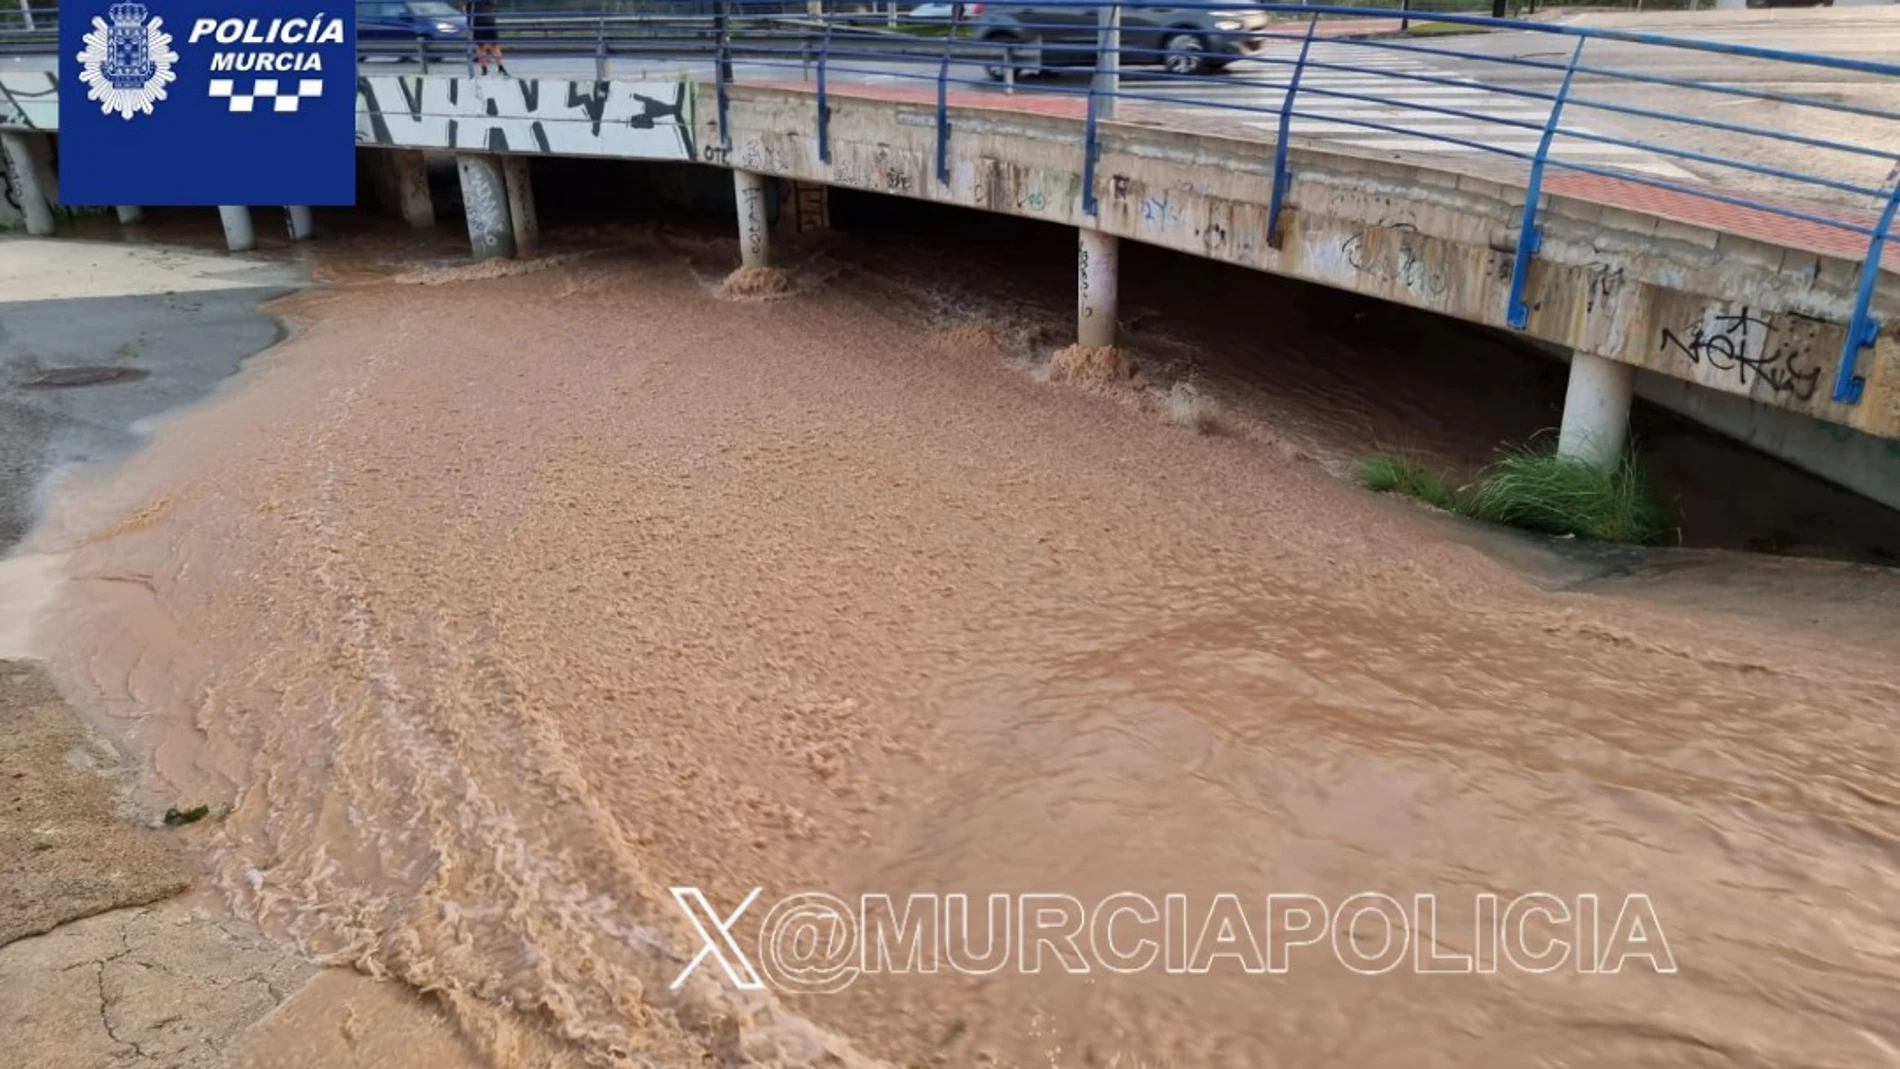 Las fuertes lluvias han inundado puentes y carreteras en Murcia